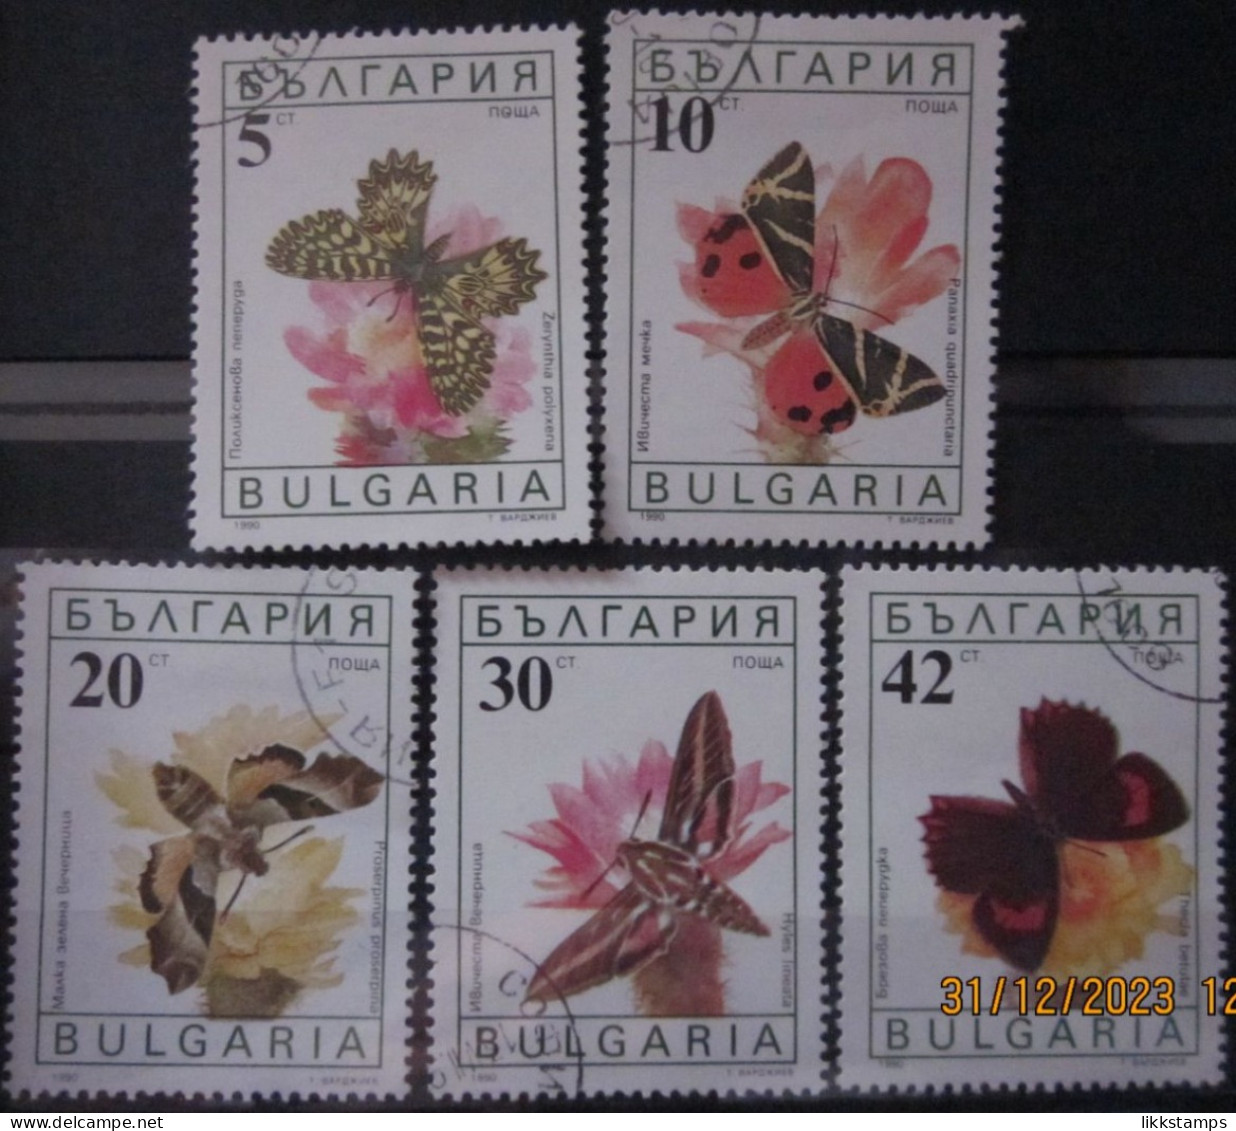 BULGARIA 1990 ~ S.G. 3699 - 3703, ~ BUTTERFLIES AND MOTHS. ~  VFU #02913 - Gebruikt